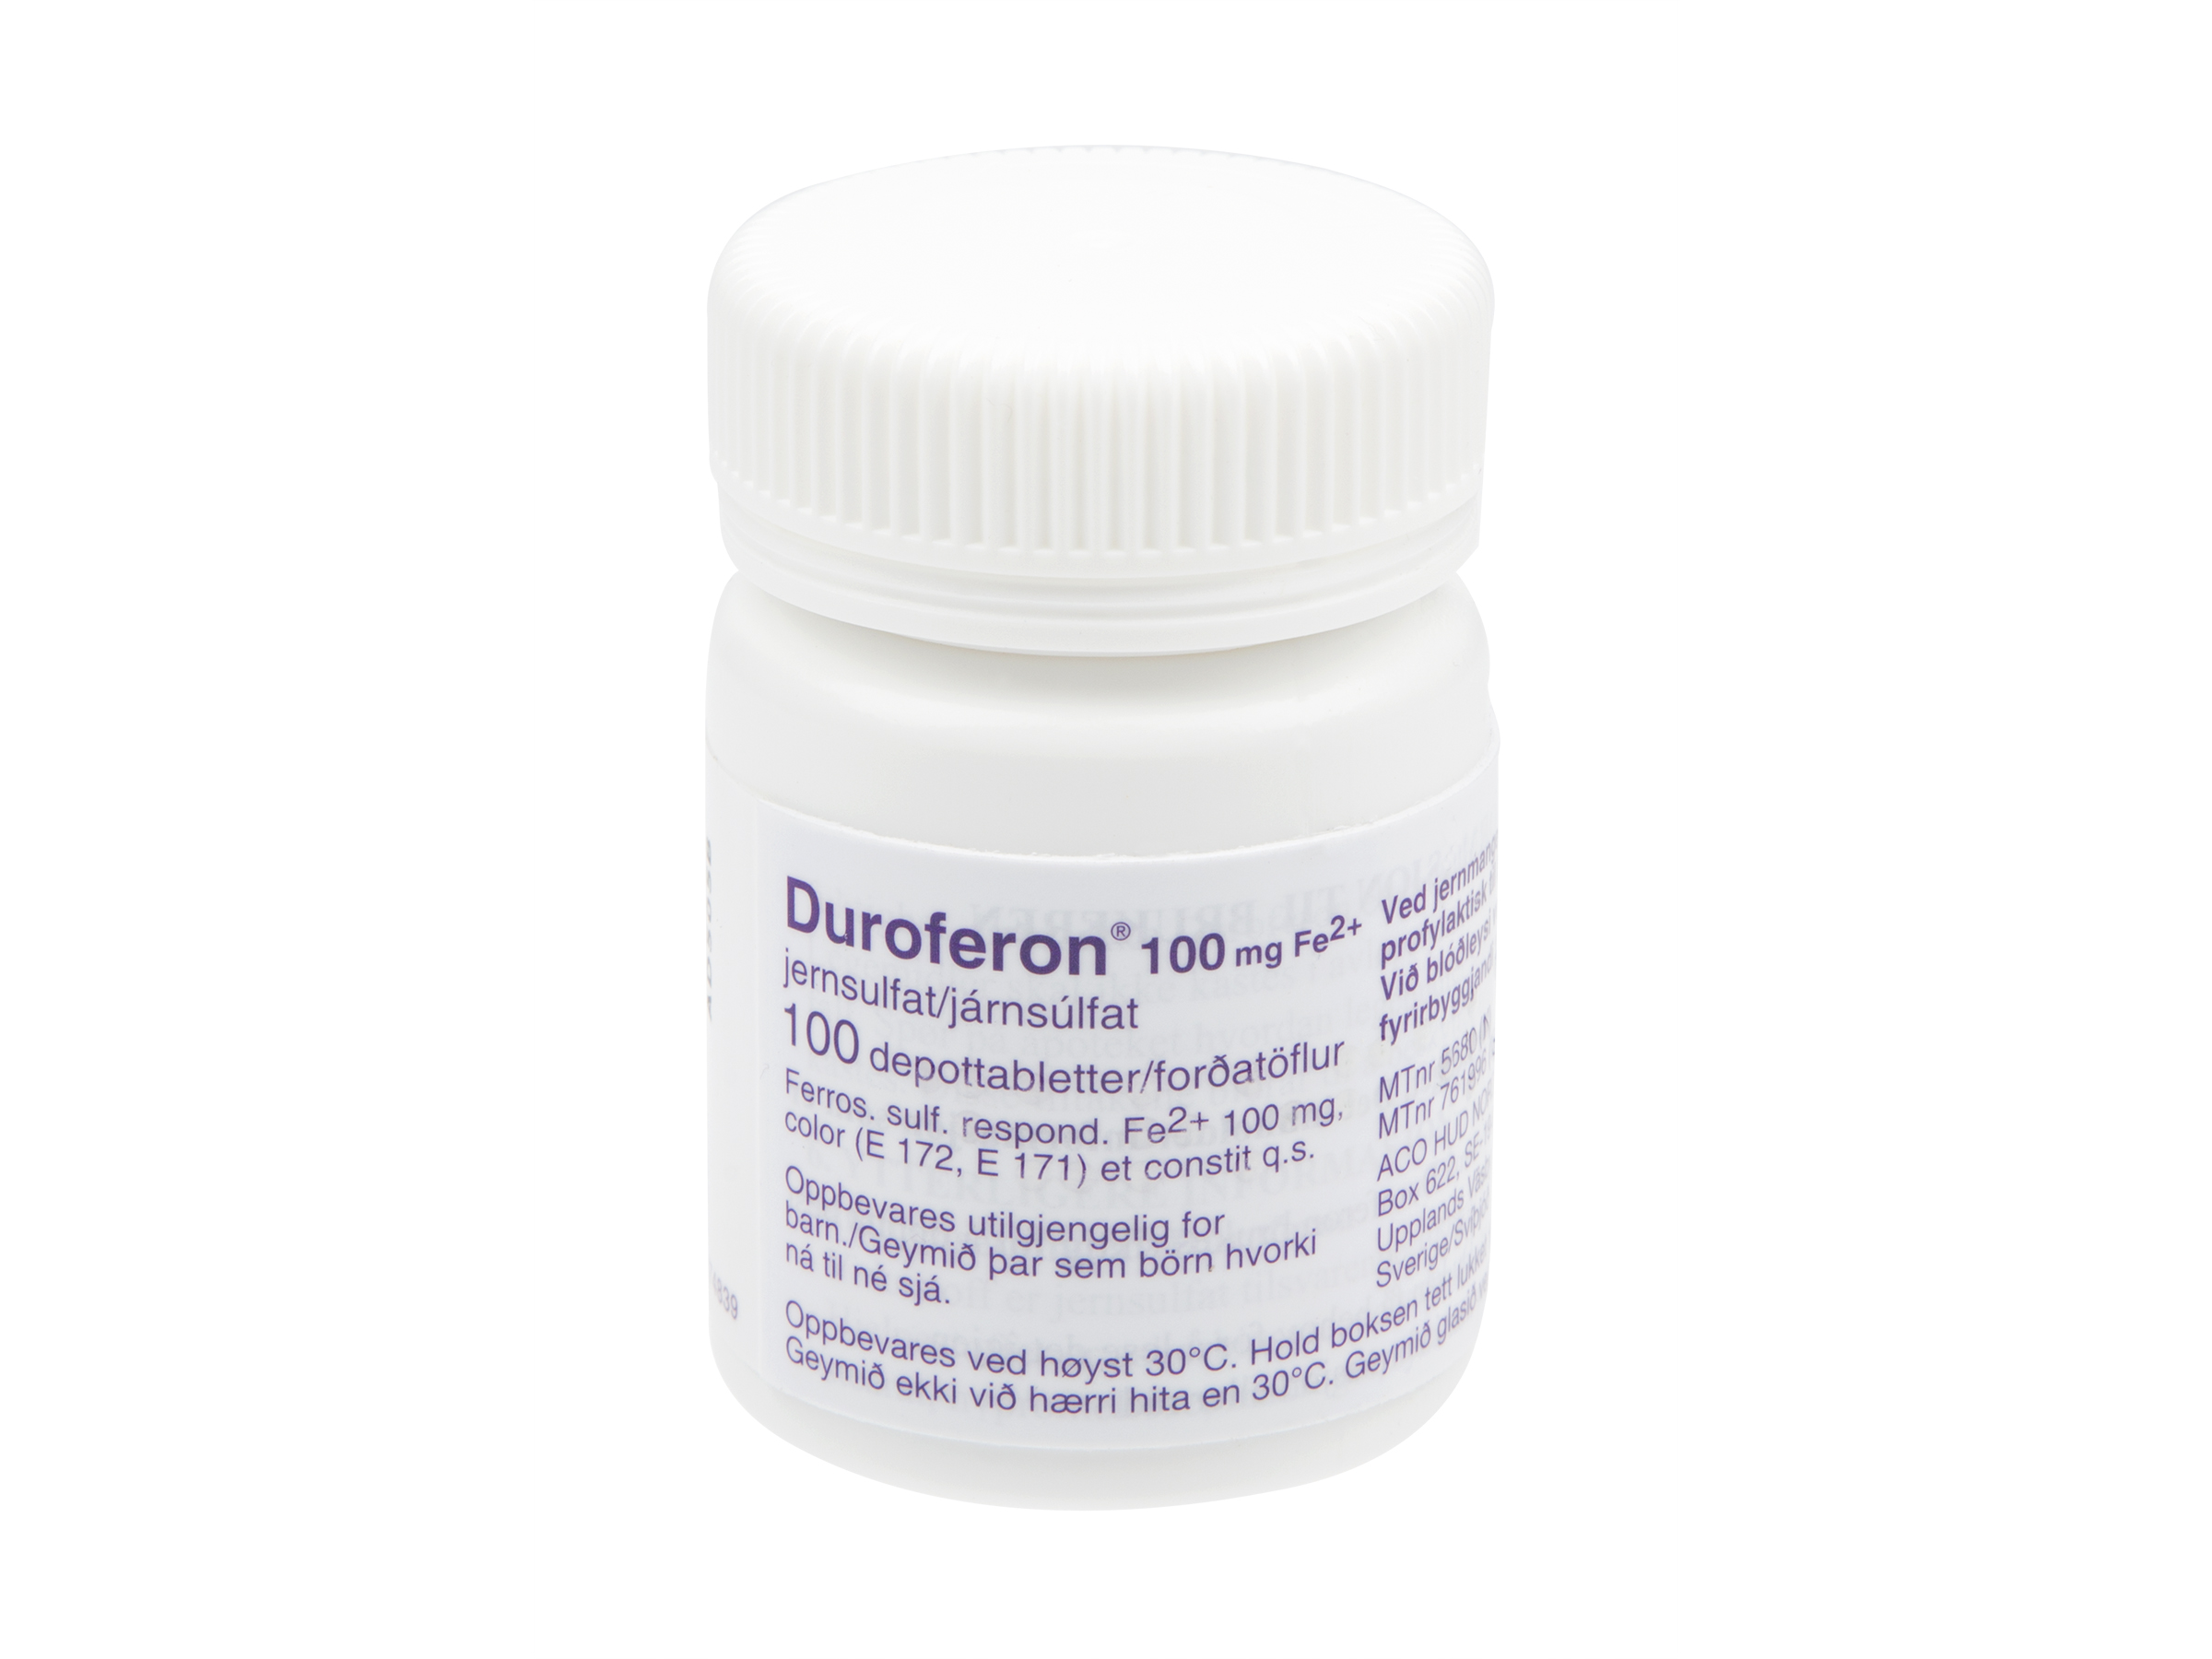 Duroferon Duretter depottabletter 100mg, 100 stk.